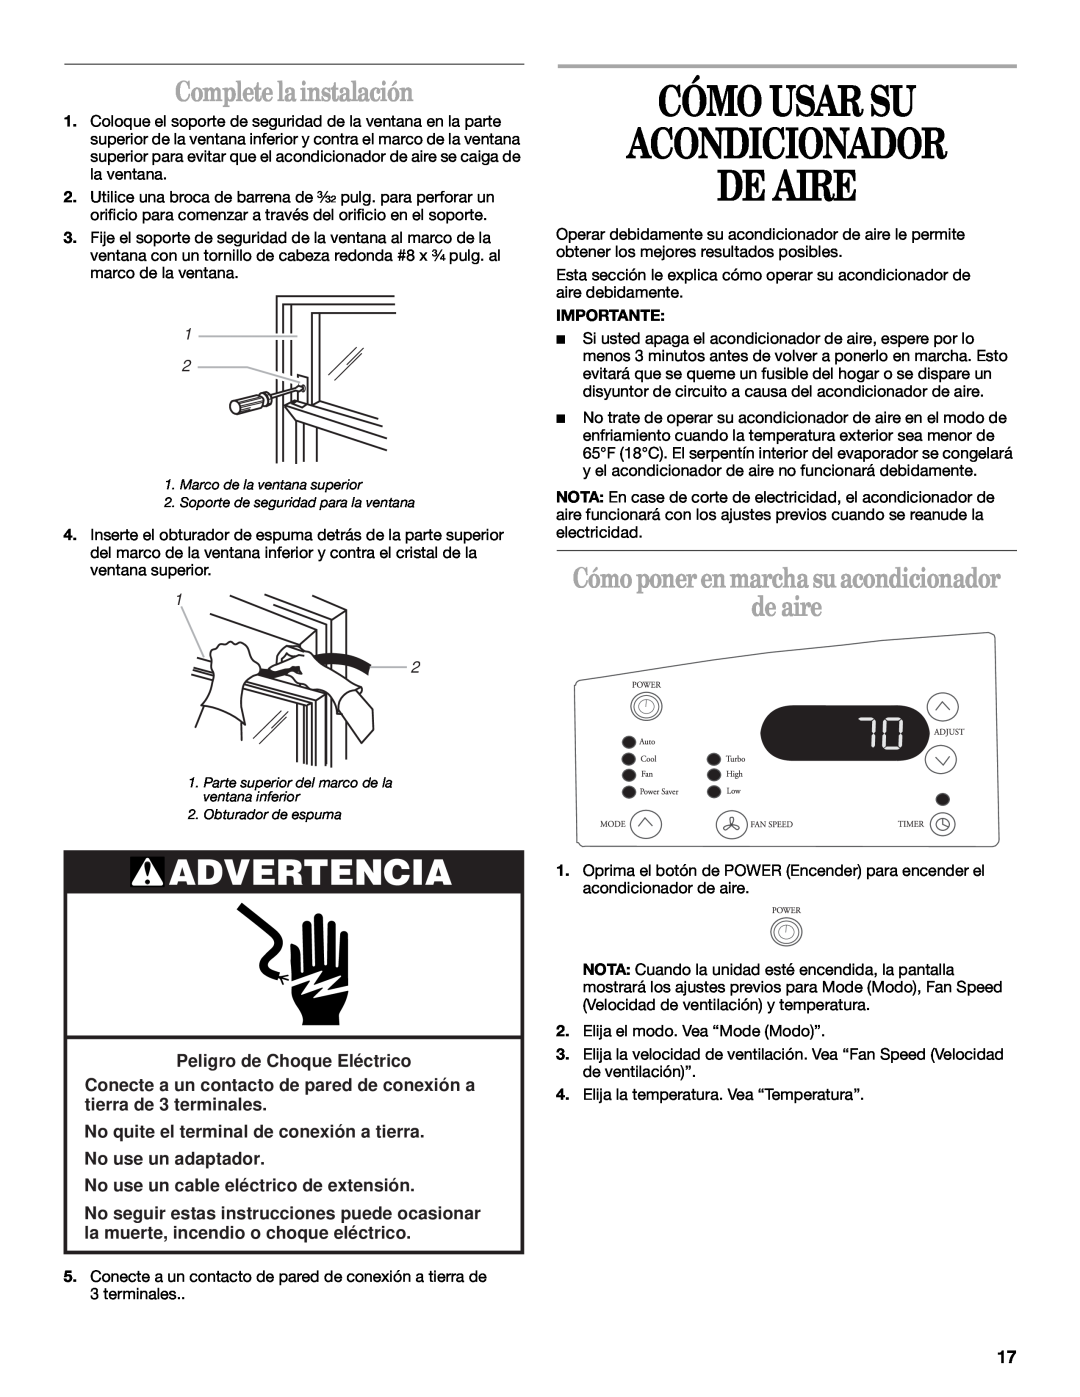 Whirlpool ACQ062MP0 manual Cómo Usar Su Acondicionador De Aire, Complete la instalación, Peligro de Choque Elé ctrico 